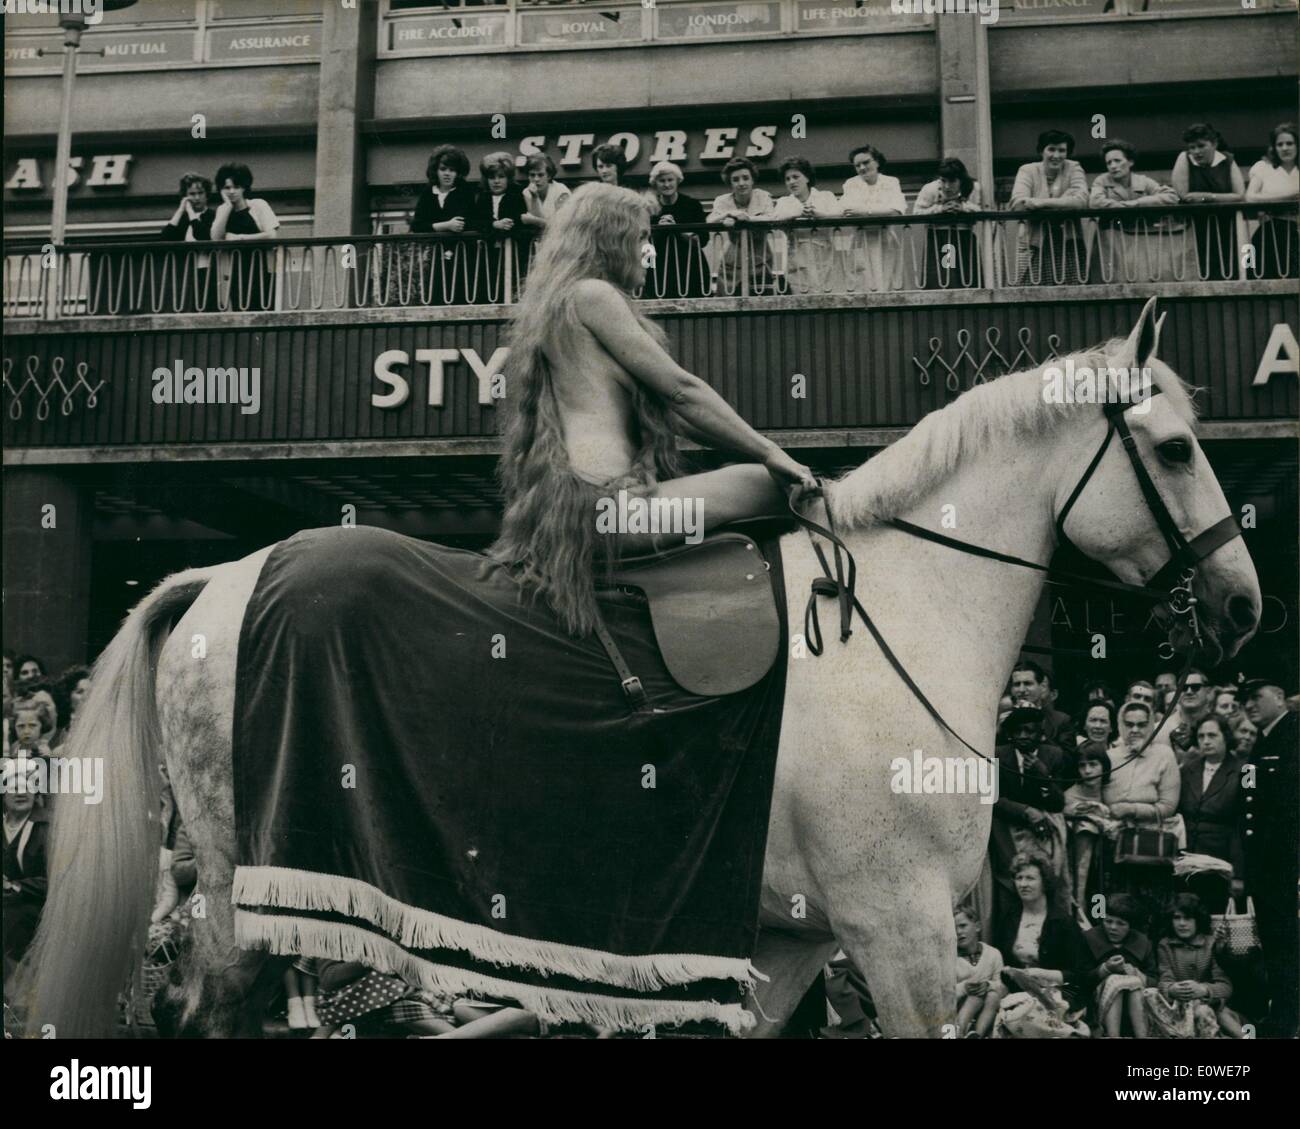 Juillet 07, 1962 - Lady Godiva rides again dans les rues de Coventry : mémoires Transparent porté sous ses longues tresses étaient tous que les aires protégées 31 ans Joyce Parker de le regard des milliers de voyeurs lorsque que Lady Godiva elle montait un cheval blanc dans les rues de Coventry pendant le carnaval de la ville hier. Mme Parker a un fils et son mari est ex-leader de l'escadron-George Parker, qui était directeur de l'intendance chrétienne dans le diocèse de Coventry Banque D'Images